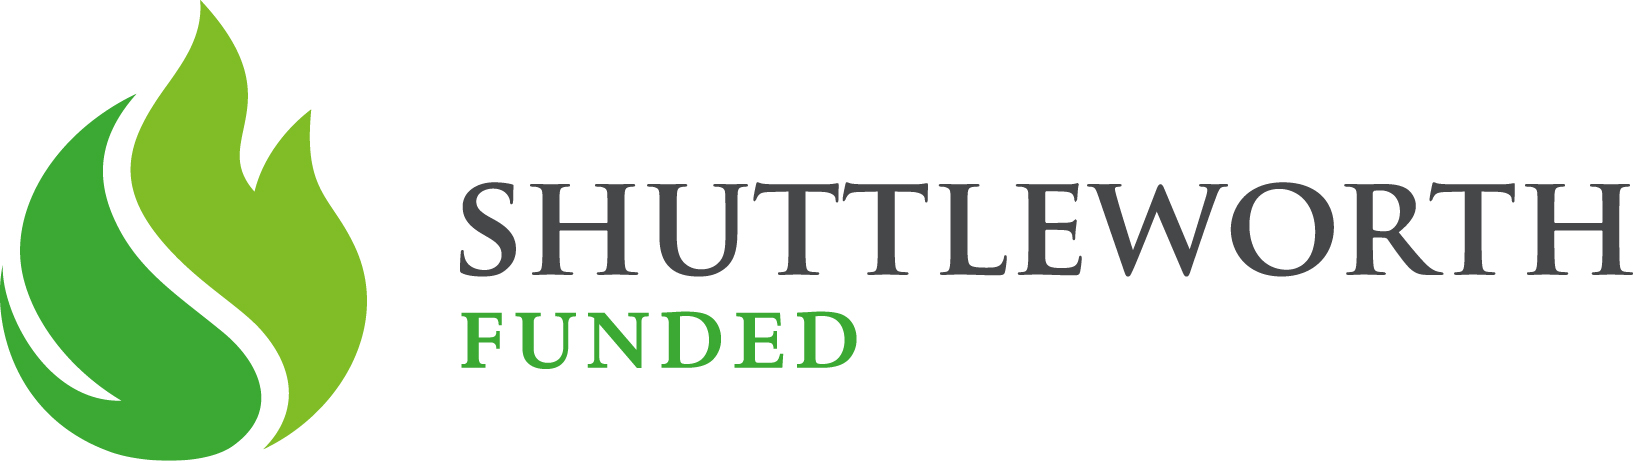 Shuttleworth Funded logo